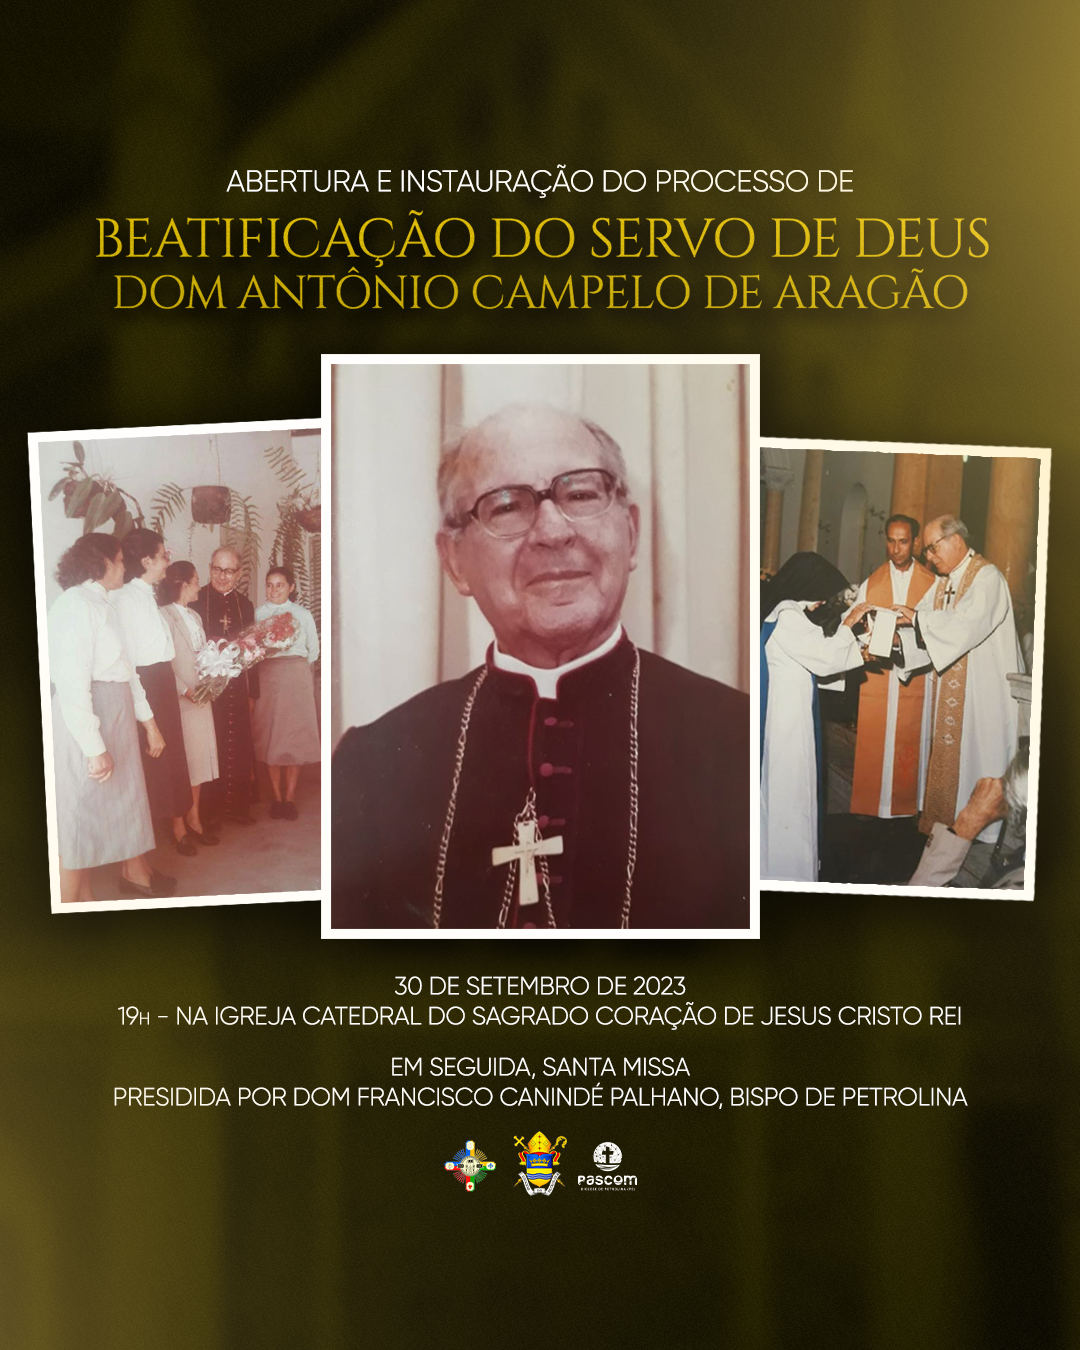 Abertura do Processo de Inquérito de beatificação de Dom Campelo ocorrerá no final do mês de setembro